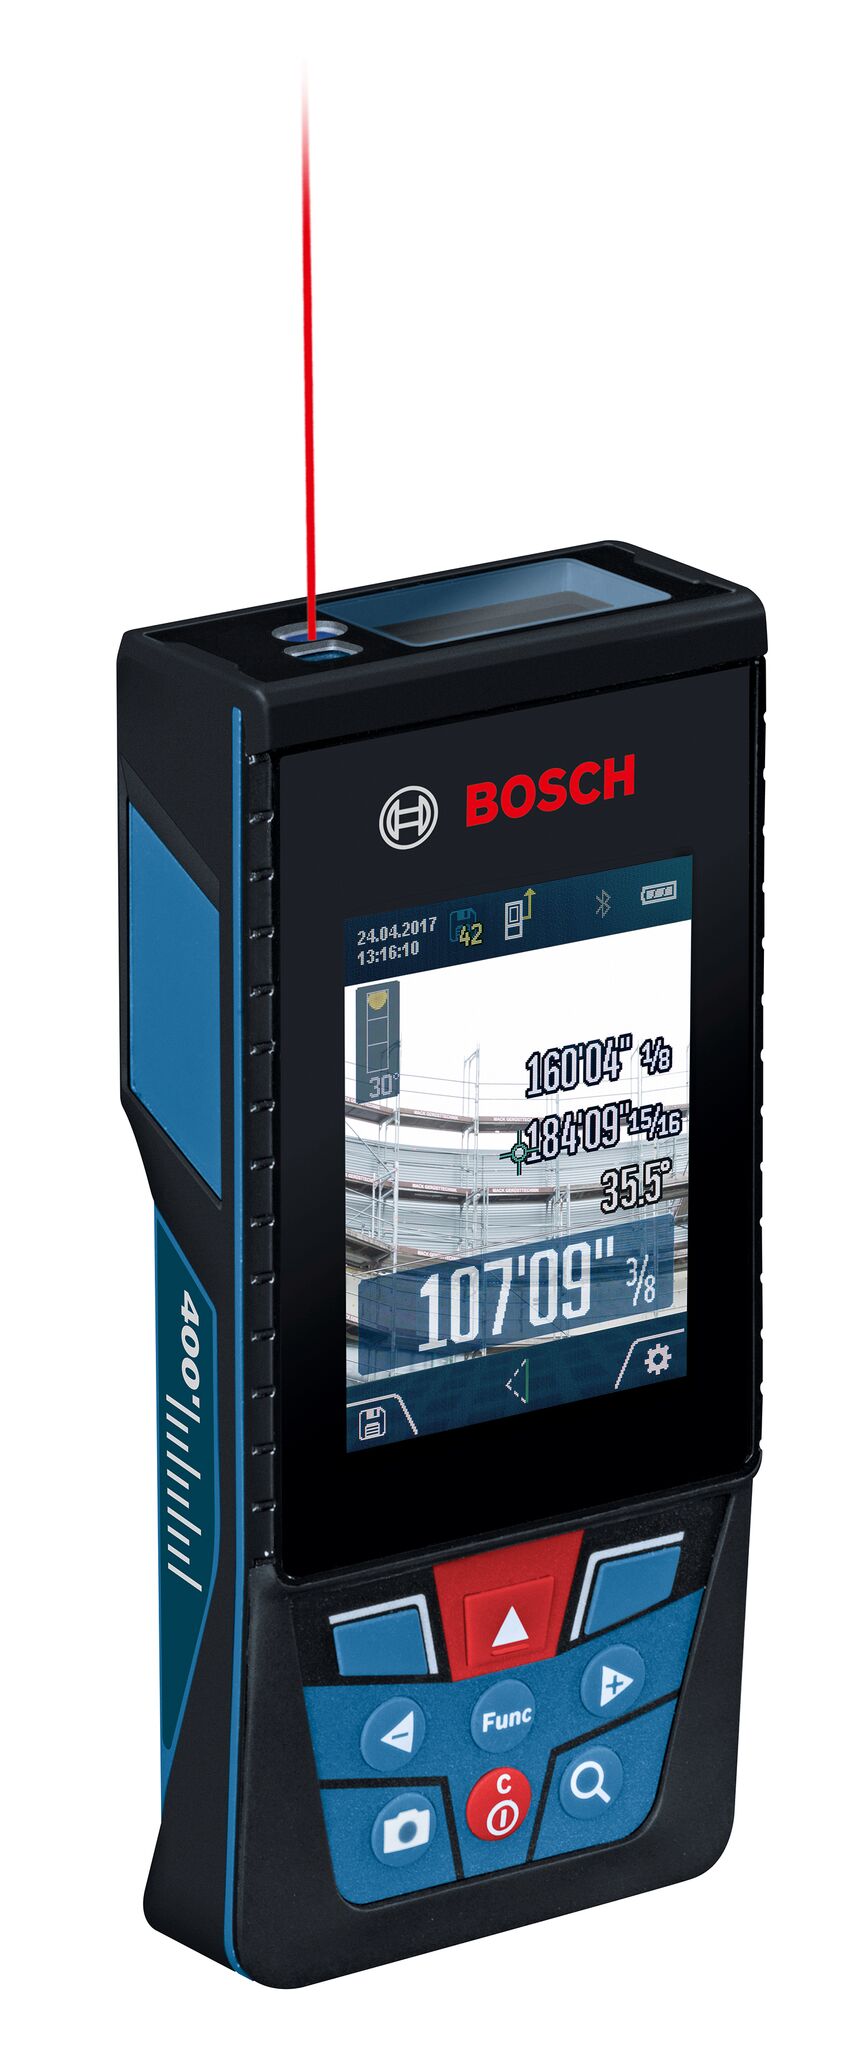 Bosch Blaze Glm400c Glm400cl Offer Camera Display That Let You